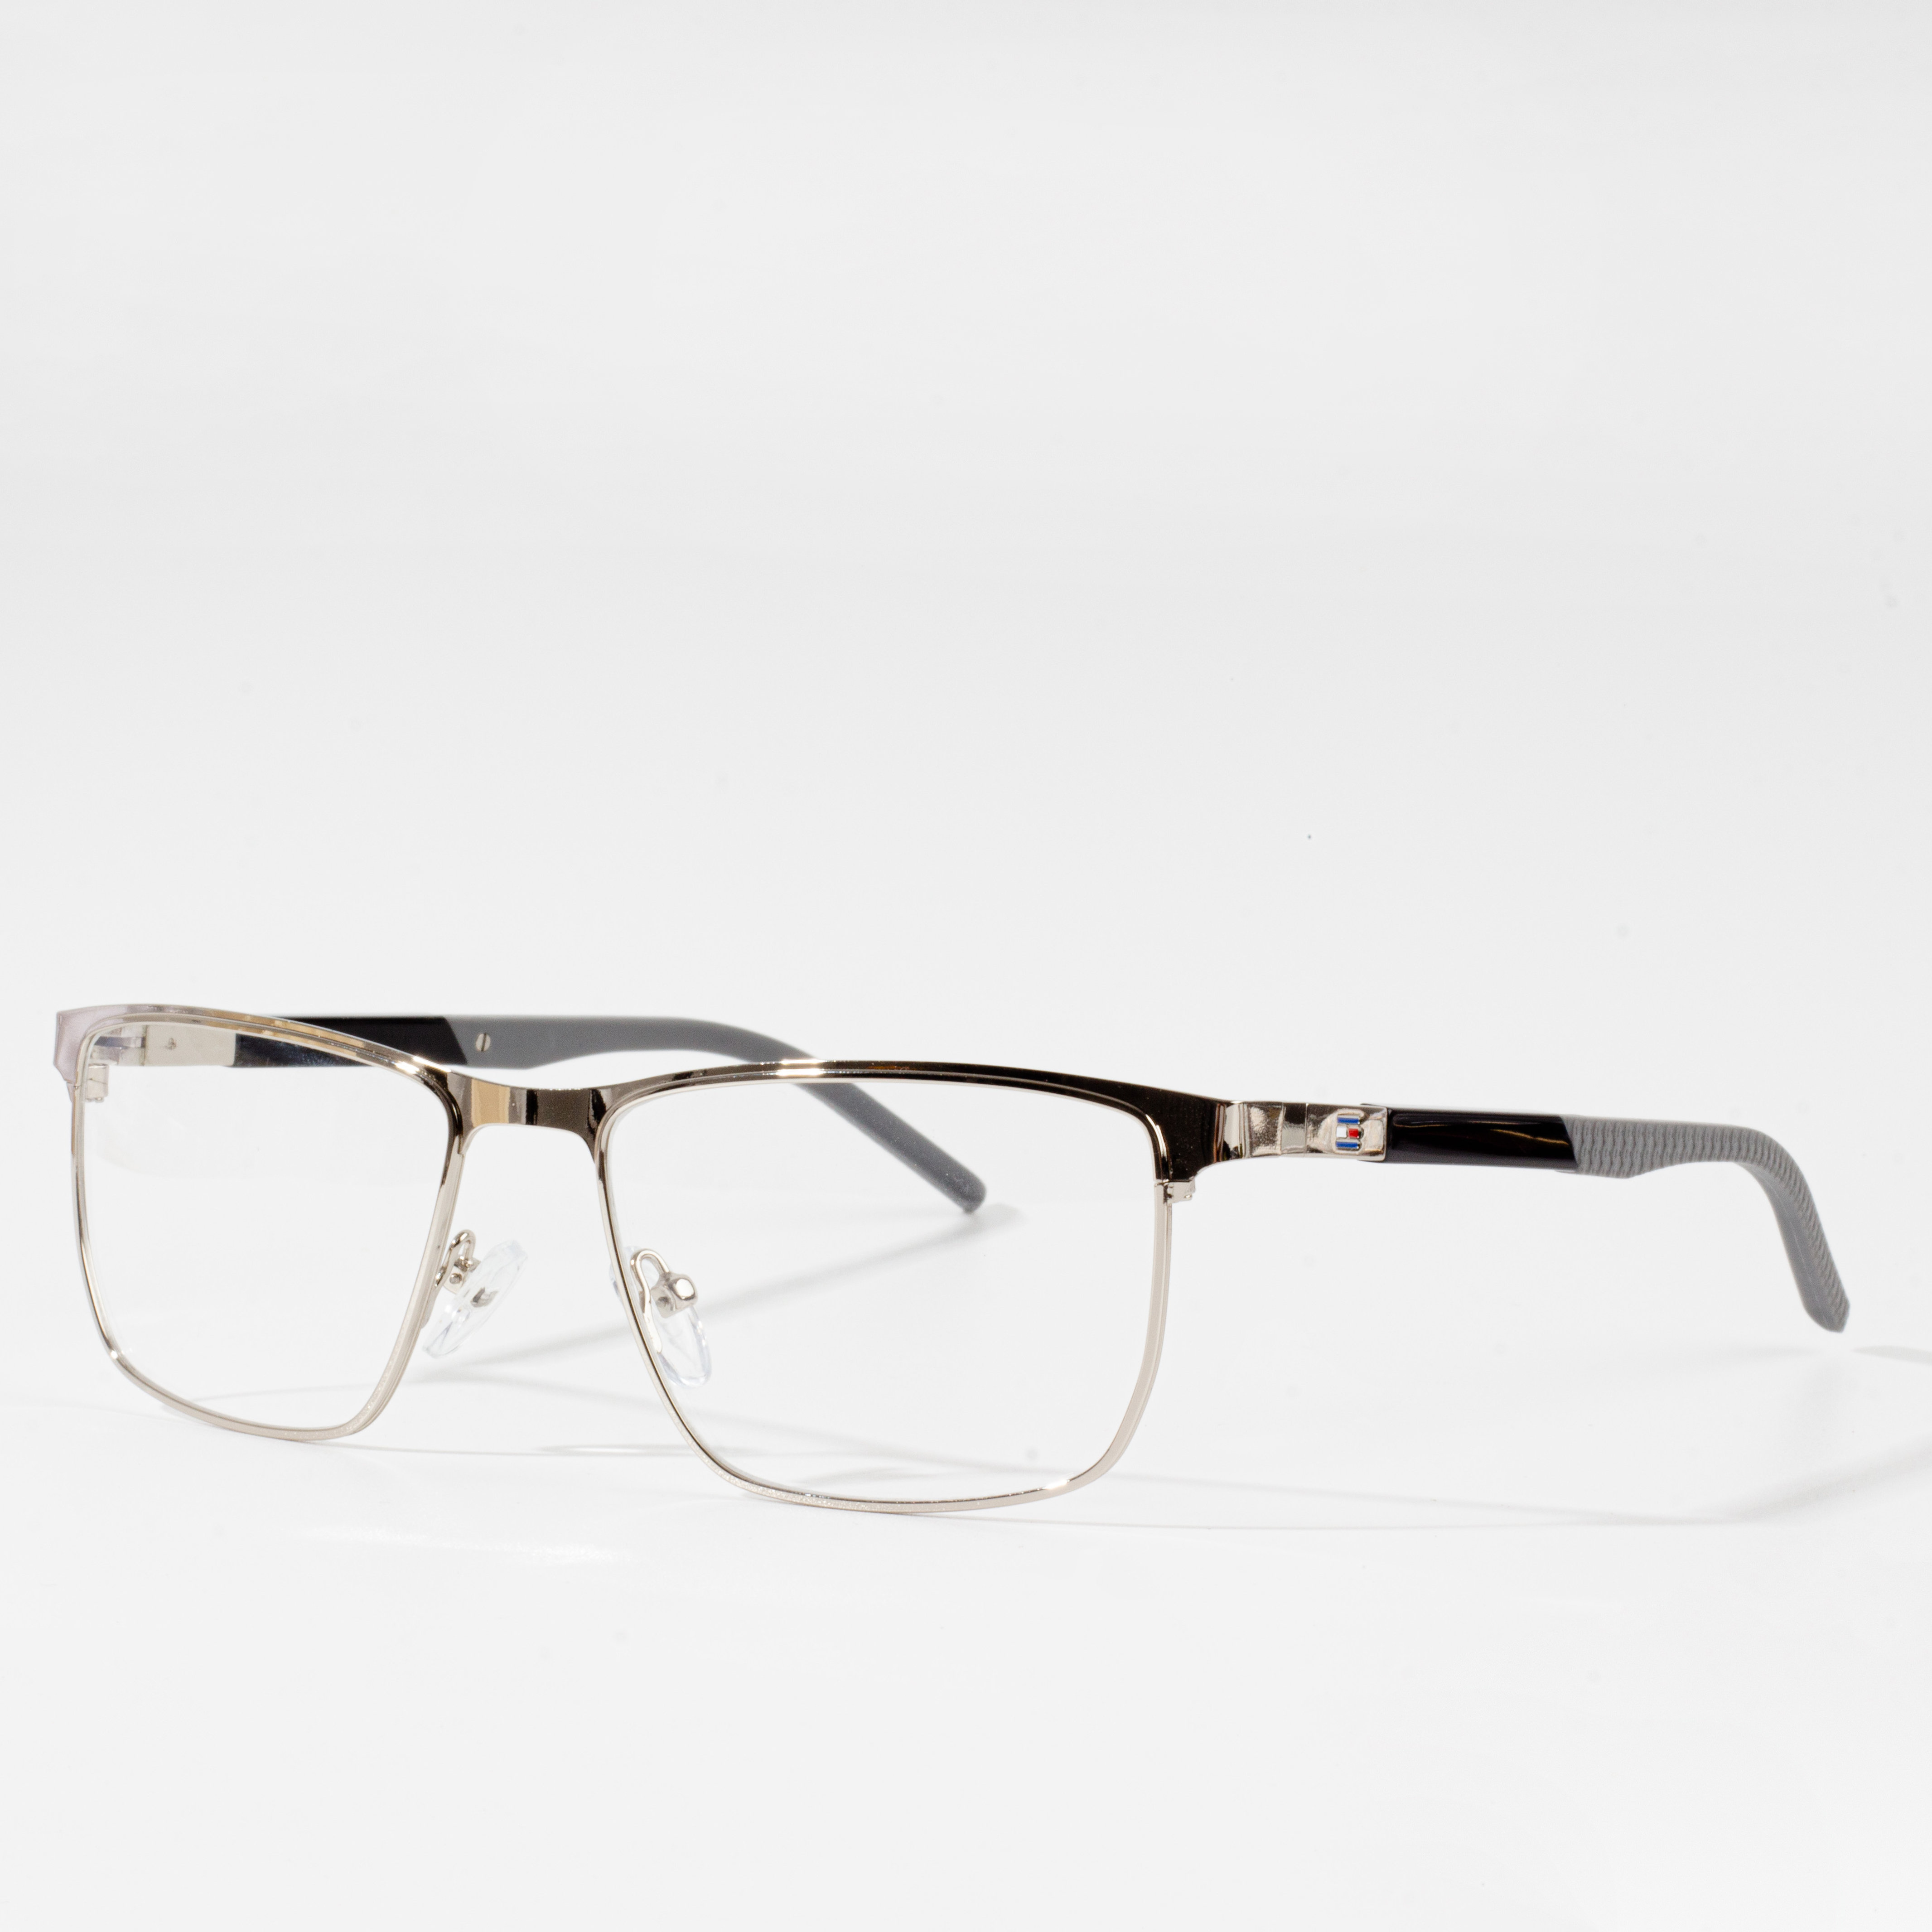 men eyeglasses frame